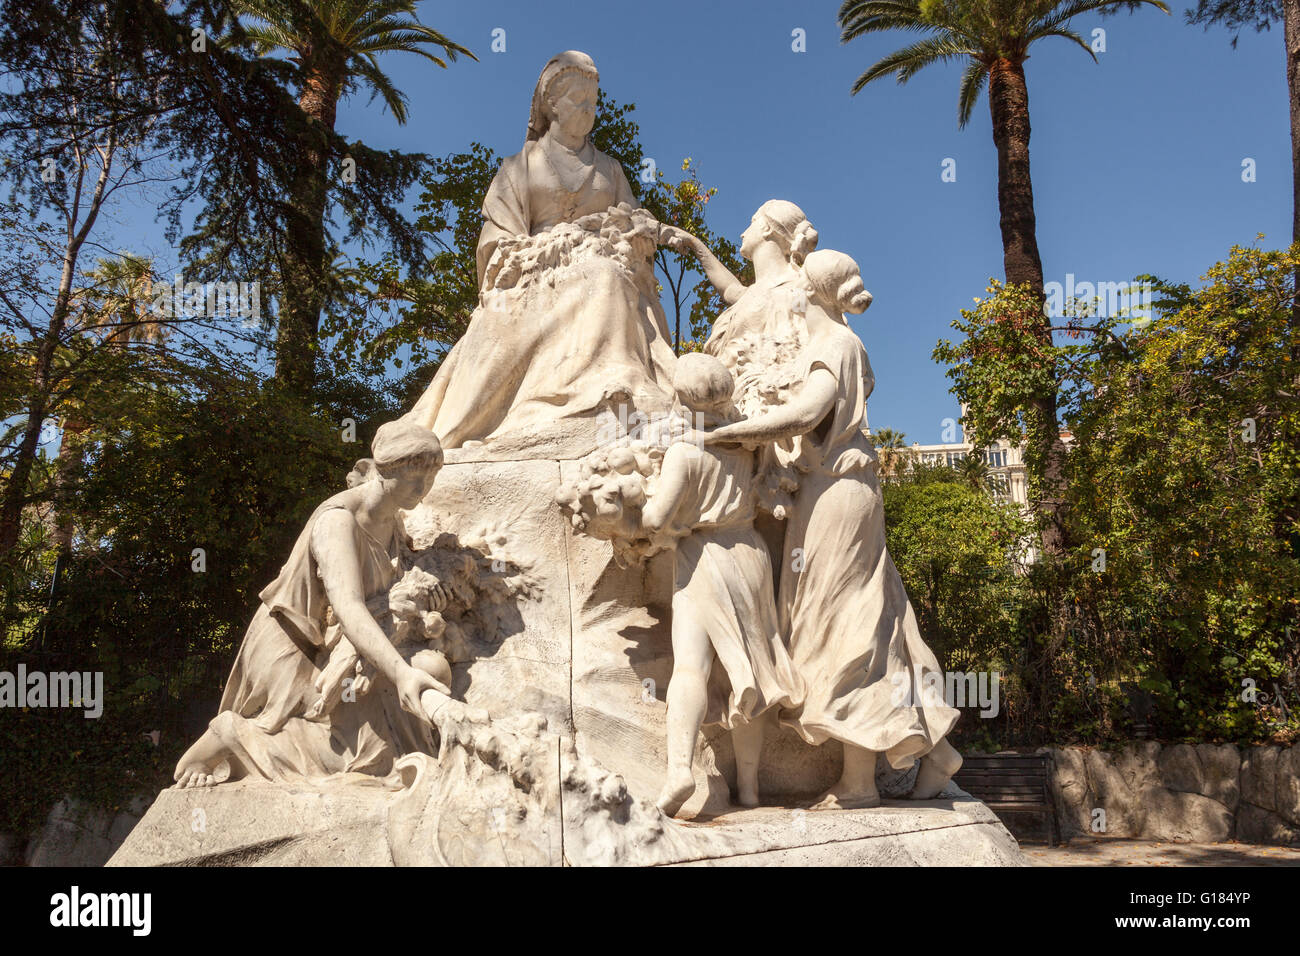 Statue de la reine Victoria situé en face de l'Hôtel Regina, Nice, Côte d'Azur, France Banque D'Images